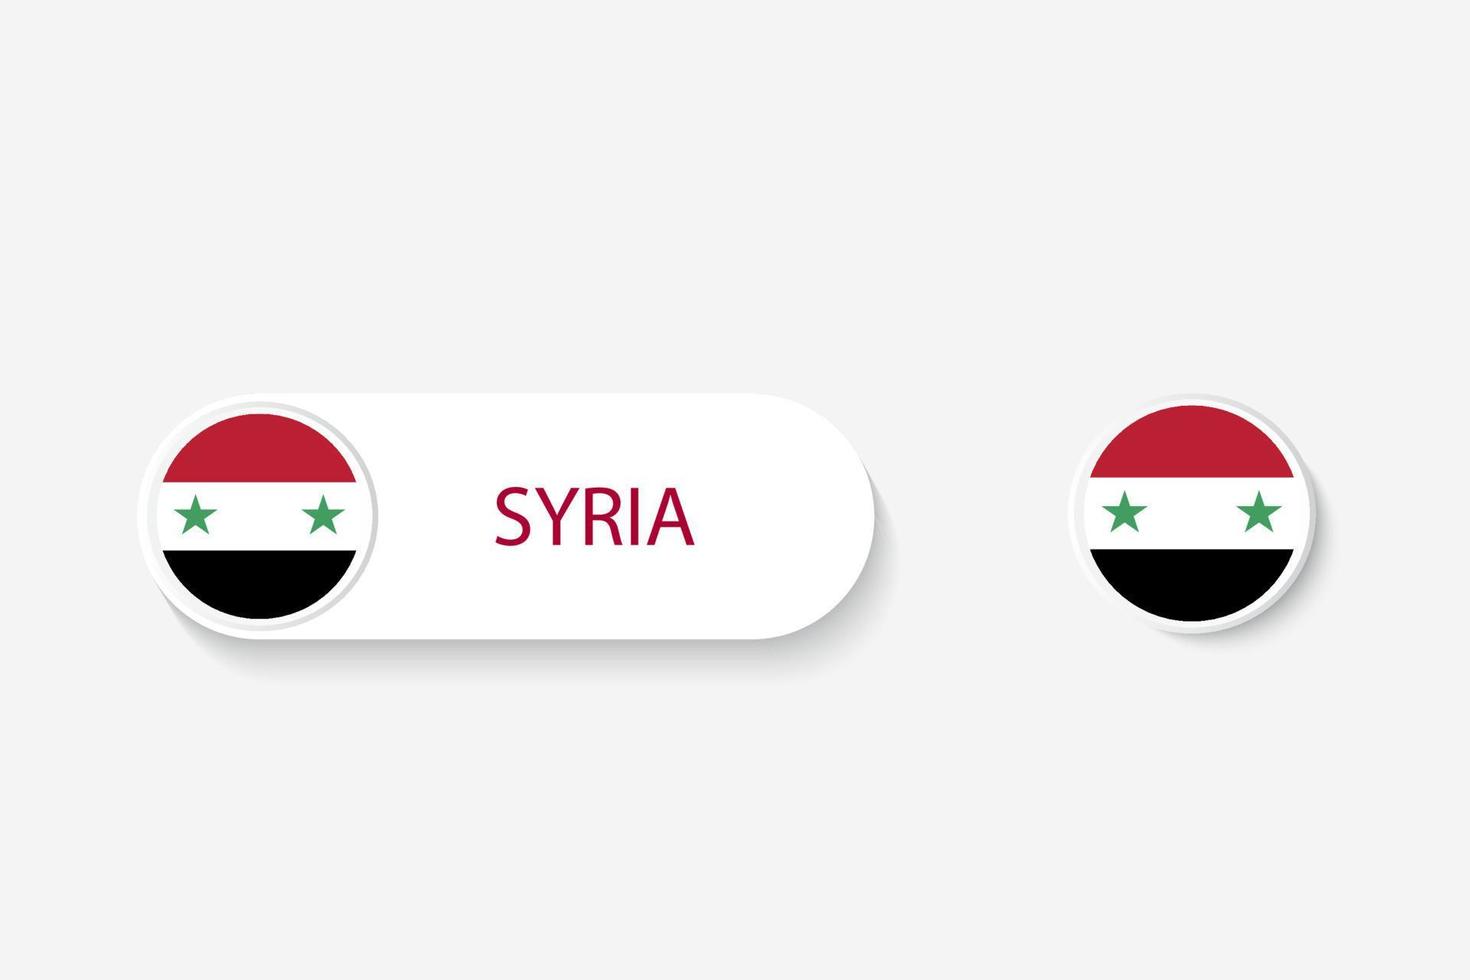 Syrien-Knopf-Flag in Illustration von Oval mit Wort von Syrien. und Knopfflagge Syrien. vektor